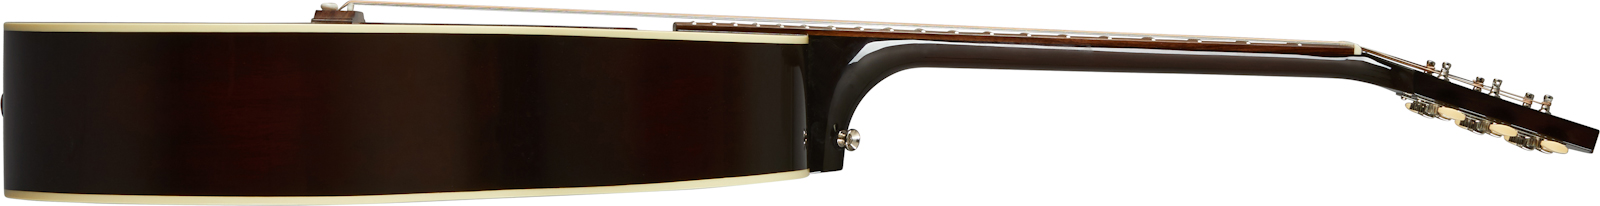 Gibson L-00 Original 2020 Parlor Epicea Acajou Rw - Vintage Sunburst - Electro acoustic guitar - Variation 2